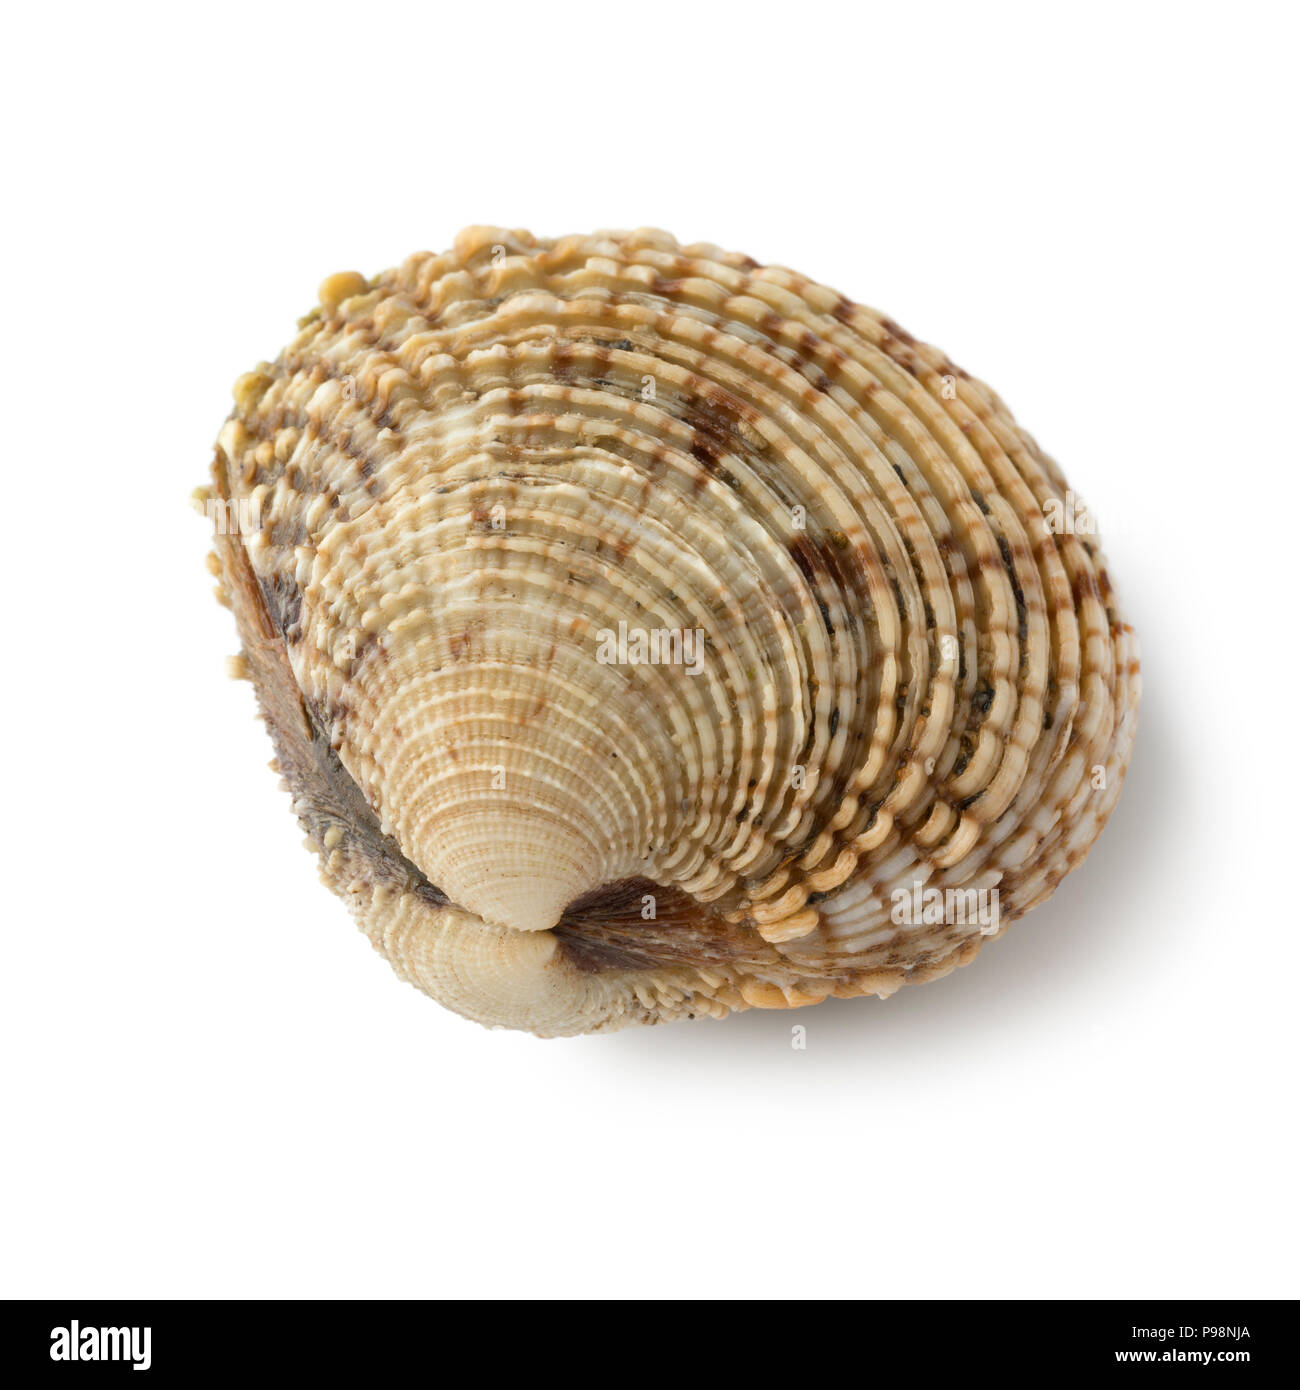 Unico crudo fresco presenta verrucosa venus clam isolati su sfondo bianco Foto Stock